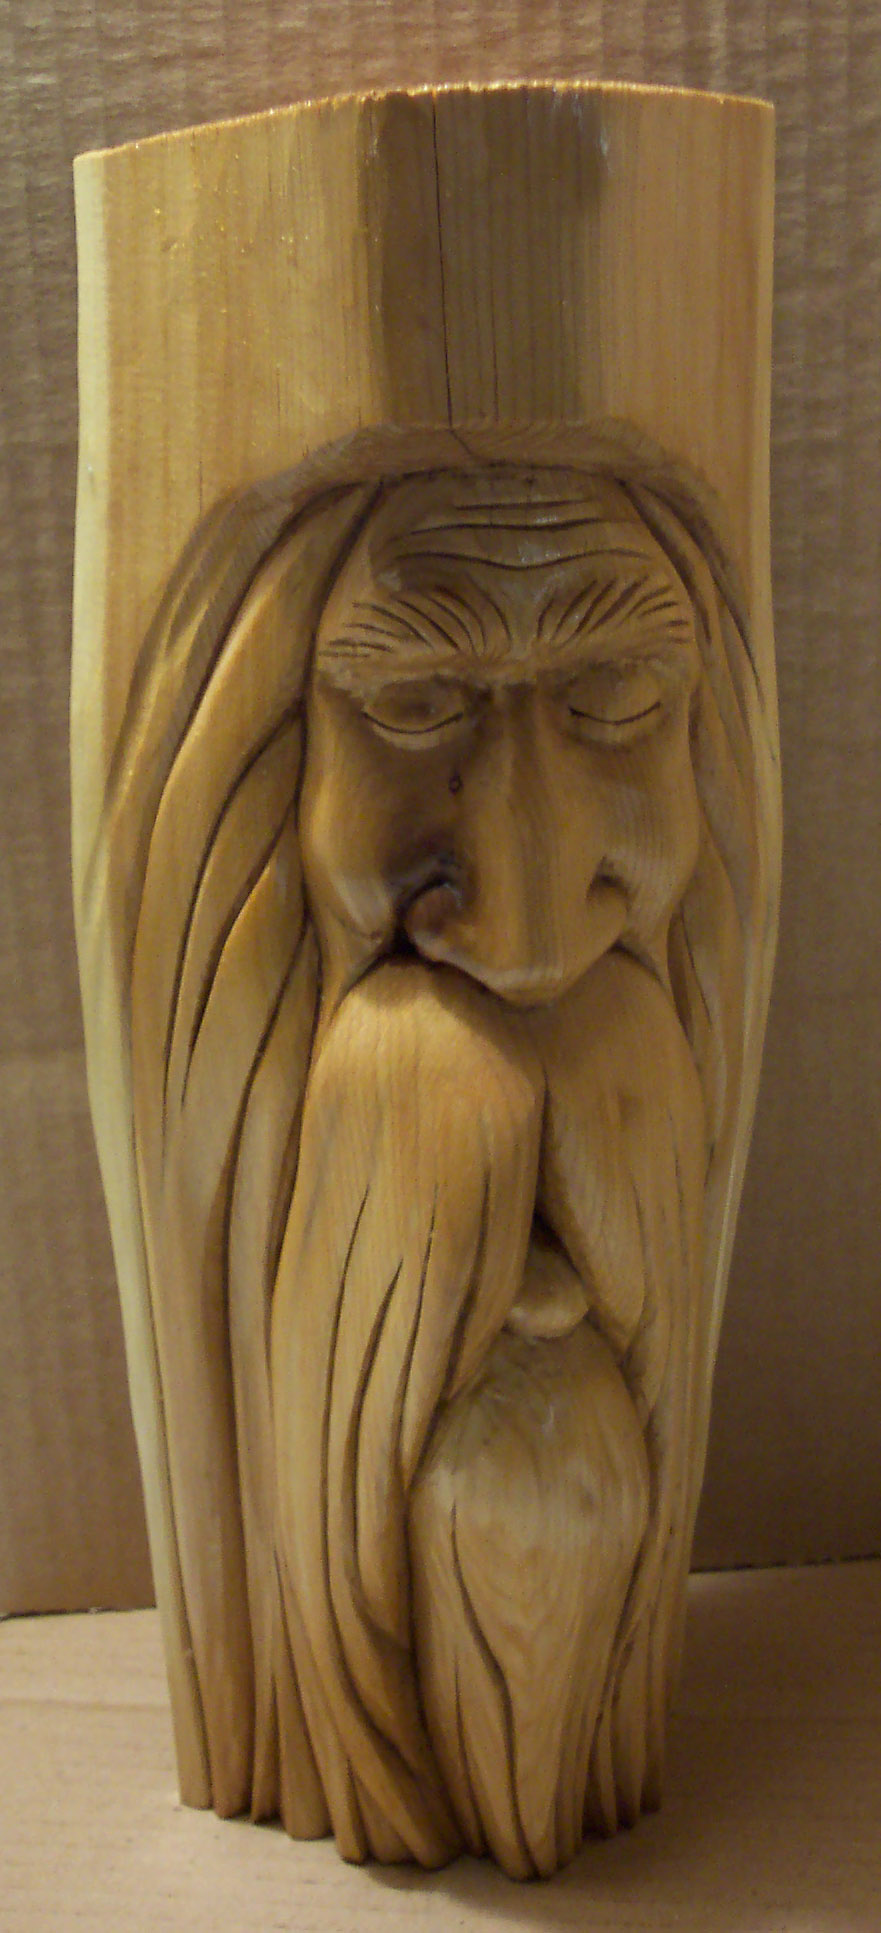 Wooden Wood Spirit Carving Patterns Free PDF Plans